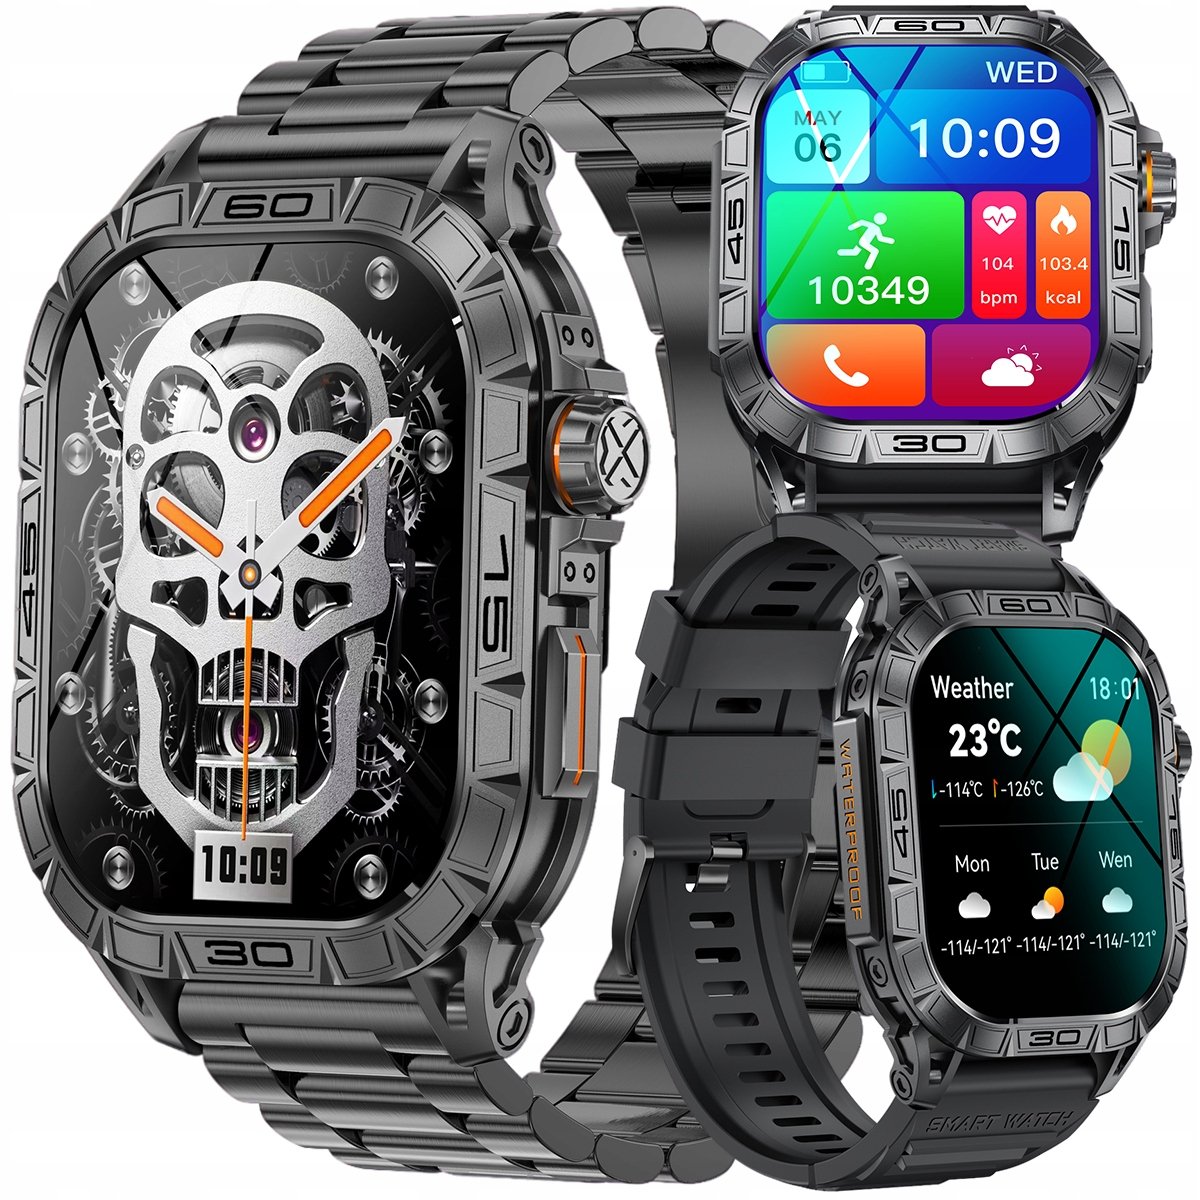 Zdjęcia - Smartwatche Smart Watch ZEGAREK MĘSKI SMARTWATCH ROZMOWY PULS SPORTOWY CZARNY AMOLED POLSKIE MENU 